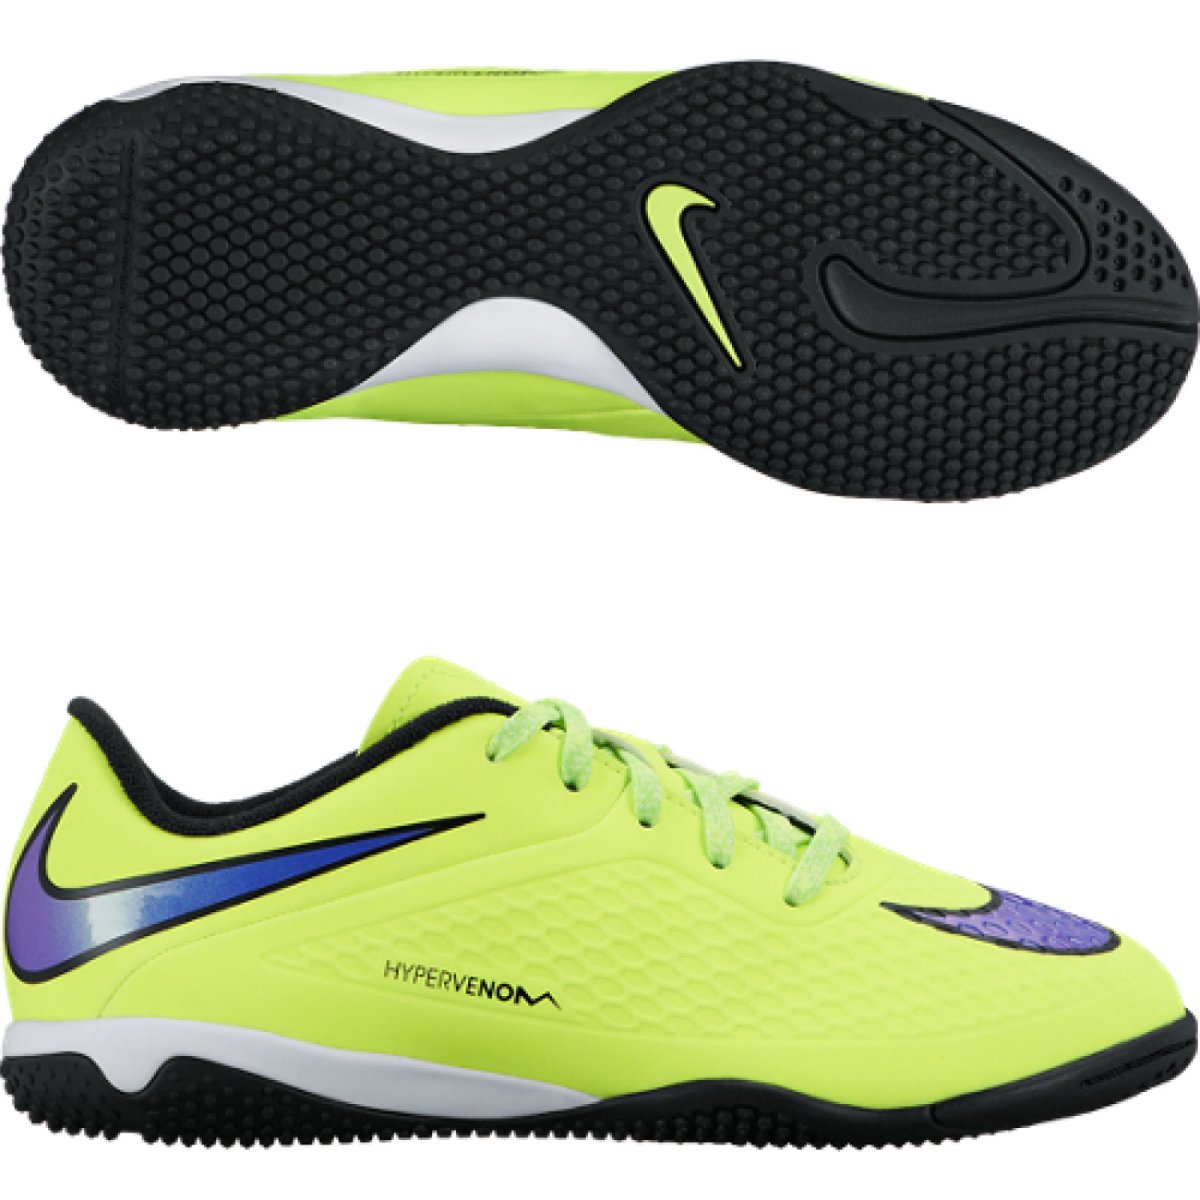 Nike Hypervenom Phelon ic